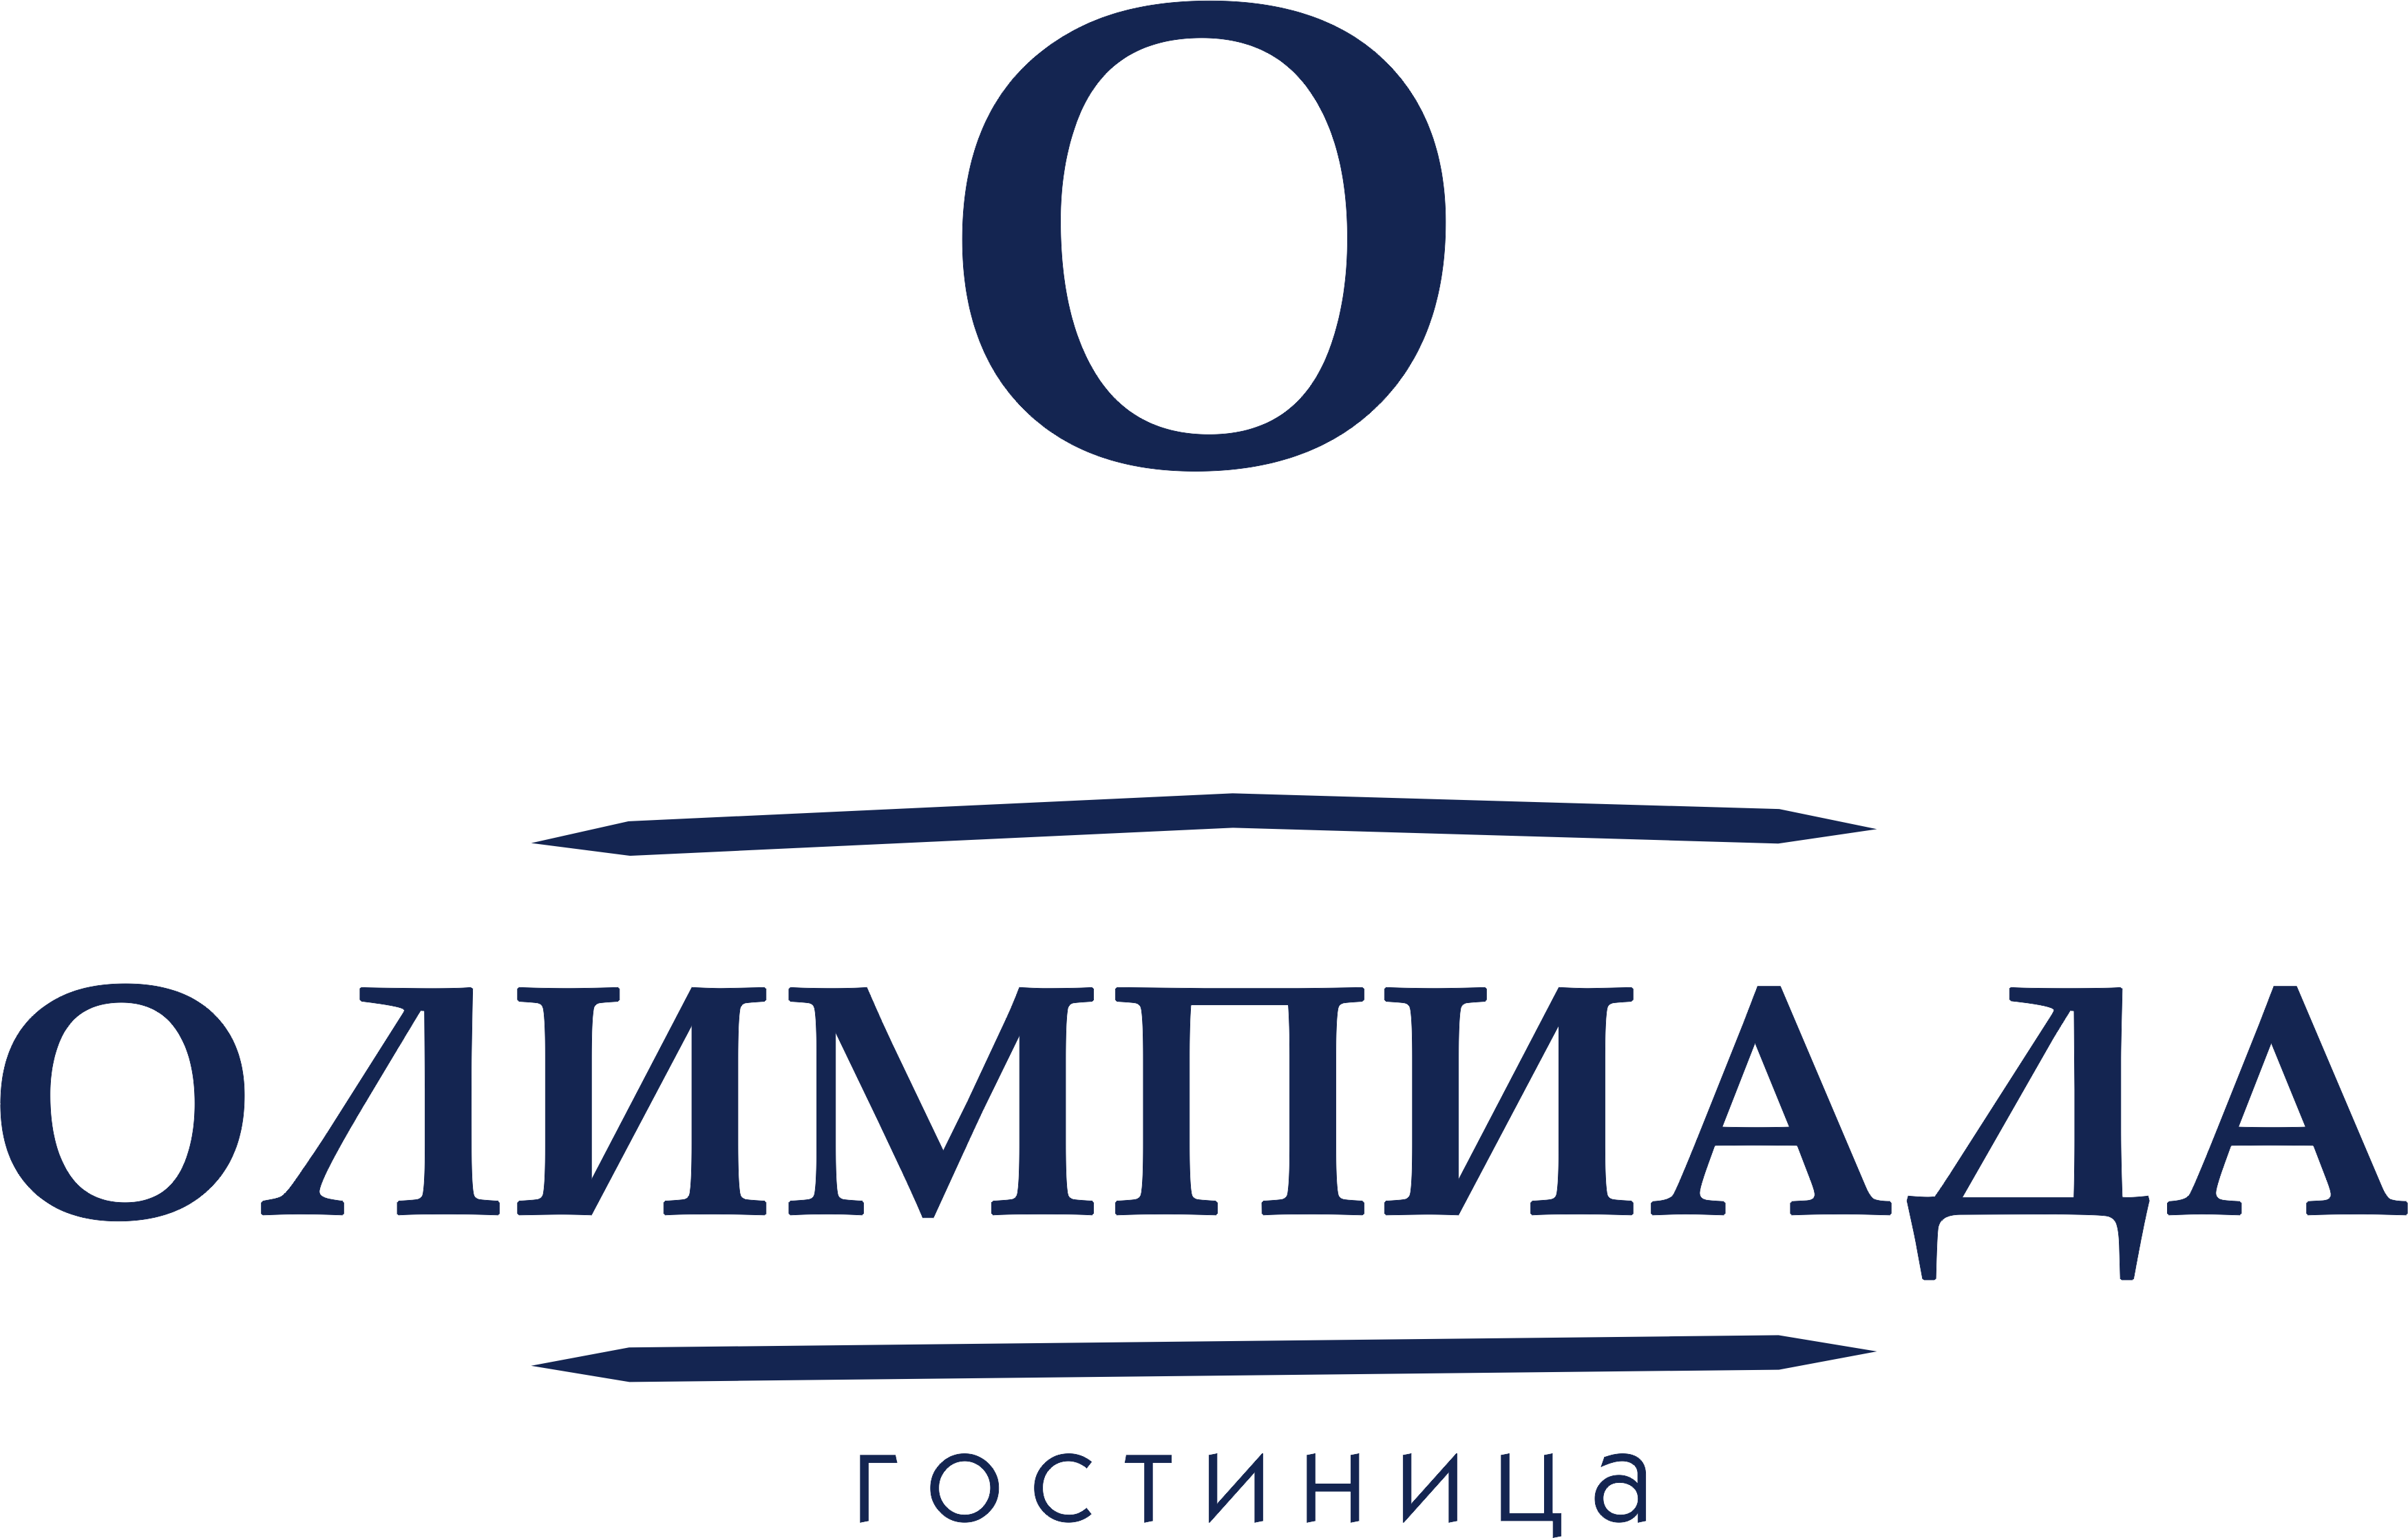 Гостиница Олимпиада Ангарск | Olympiada hotel — официальный сайт гостиницы